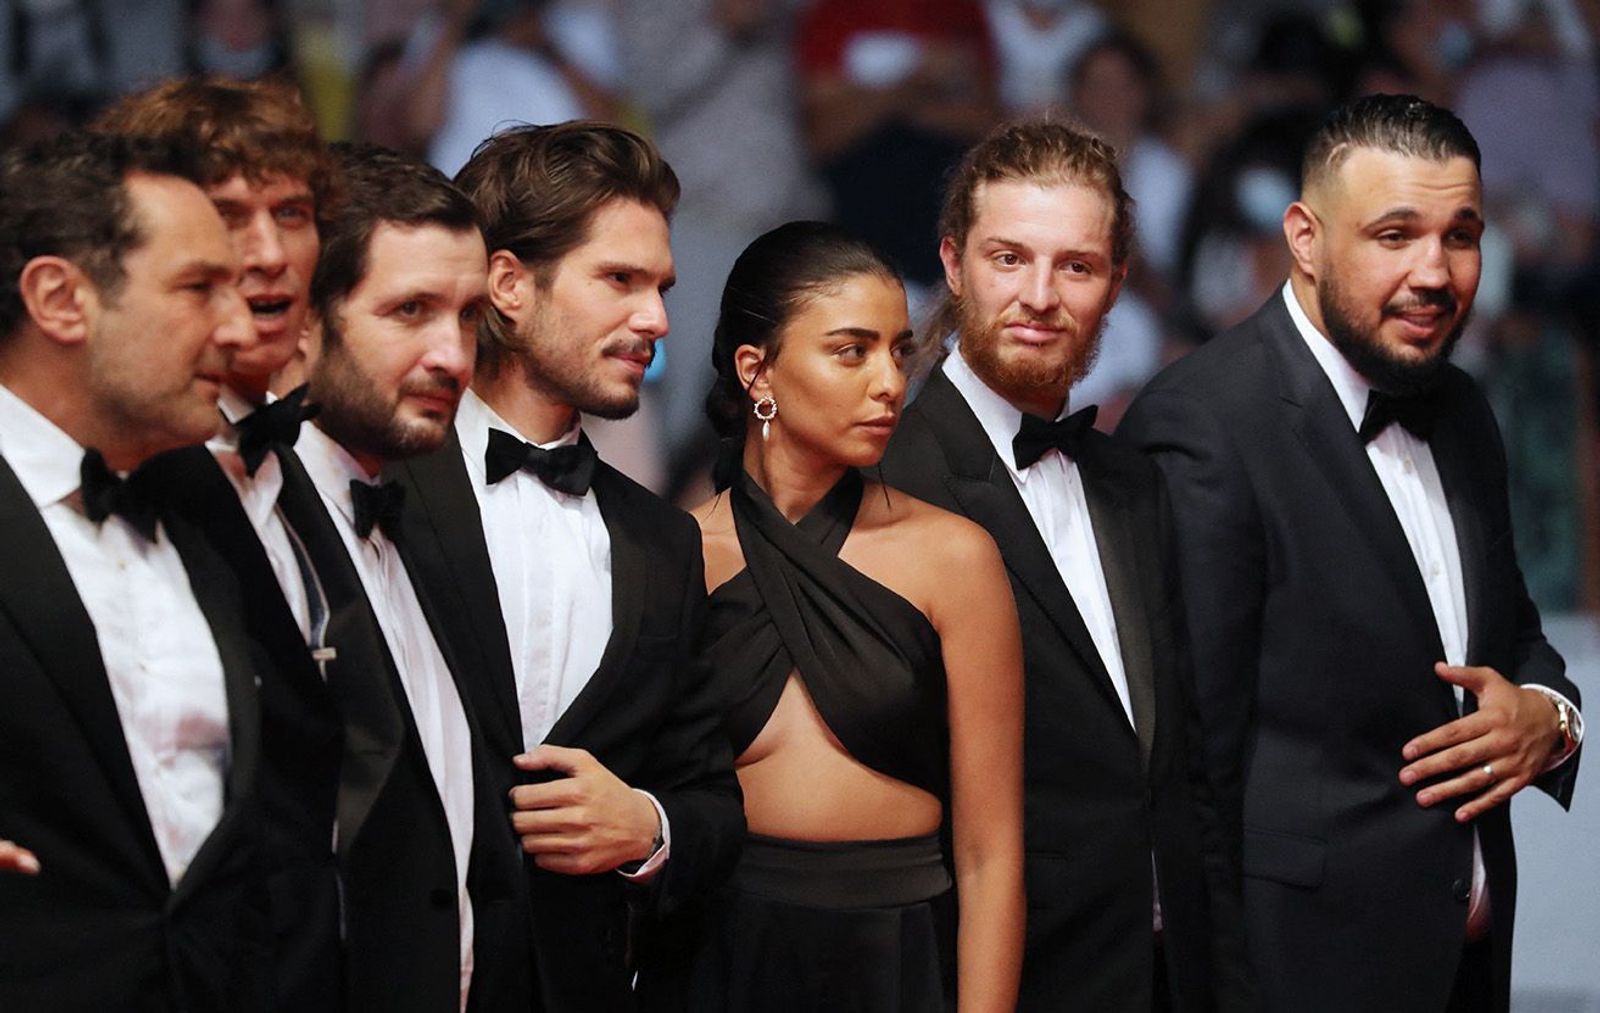 Équipe du film - BAC Nord - Festival de Cannes